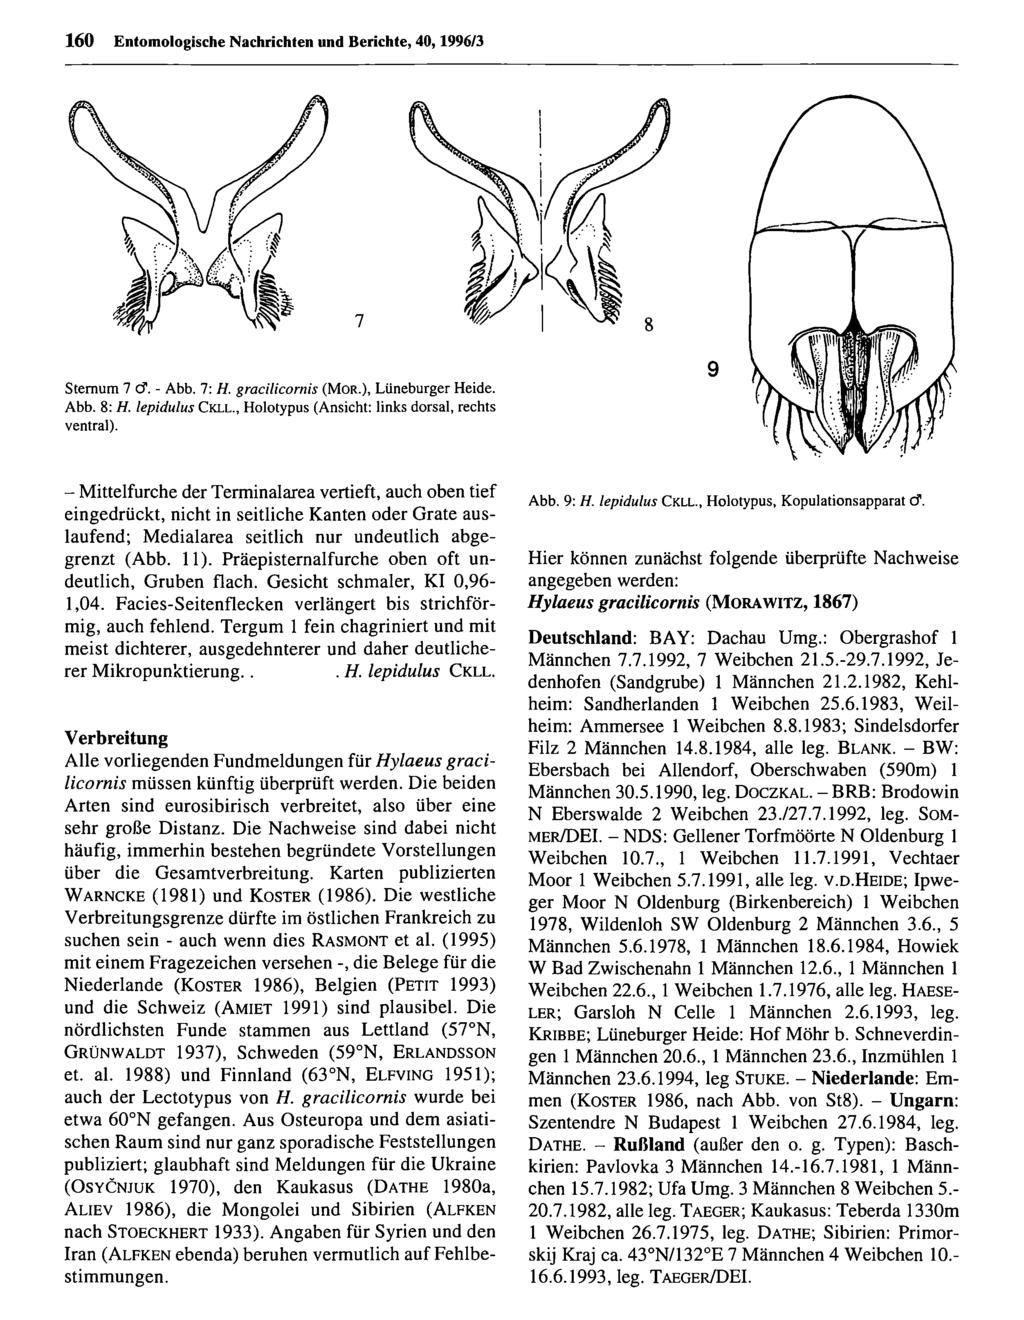 160 Entom ologische Nachrichten Entomologische und Berichte, Nachrichten 40,1996/3 und Berichte; download unter www.biologiezentrum.